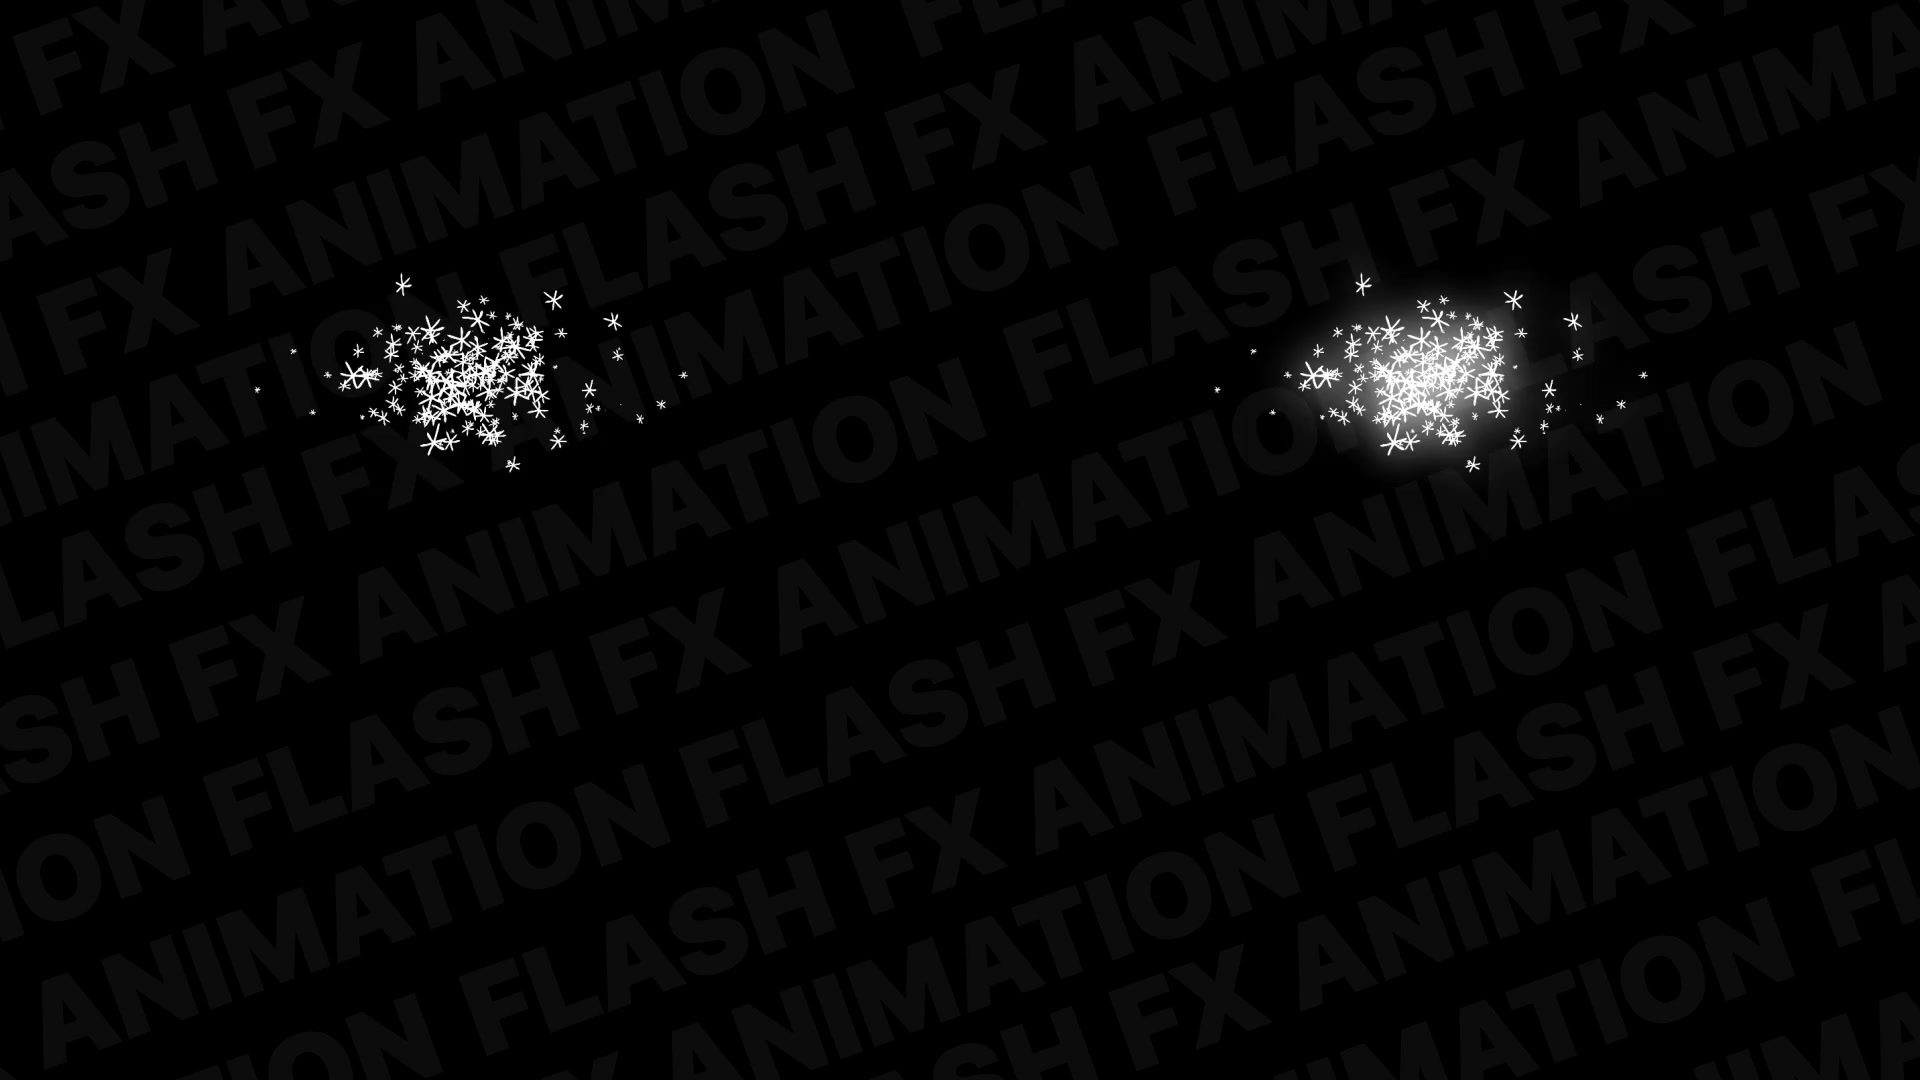 Snow Explosions | Premiere Pro MOGRT Videohive 29521579 Premiere Pro Image 8